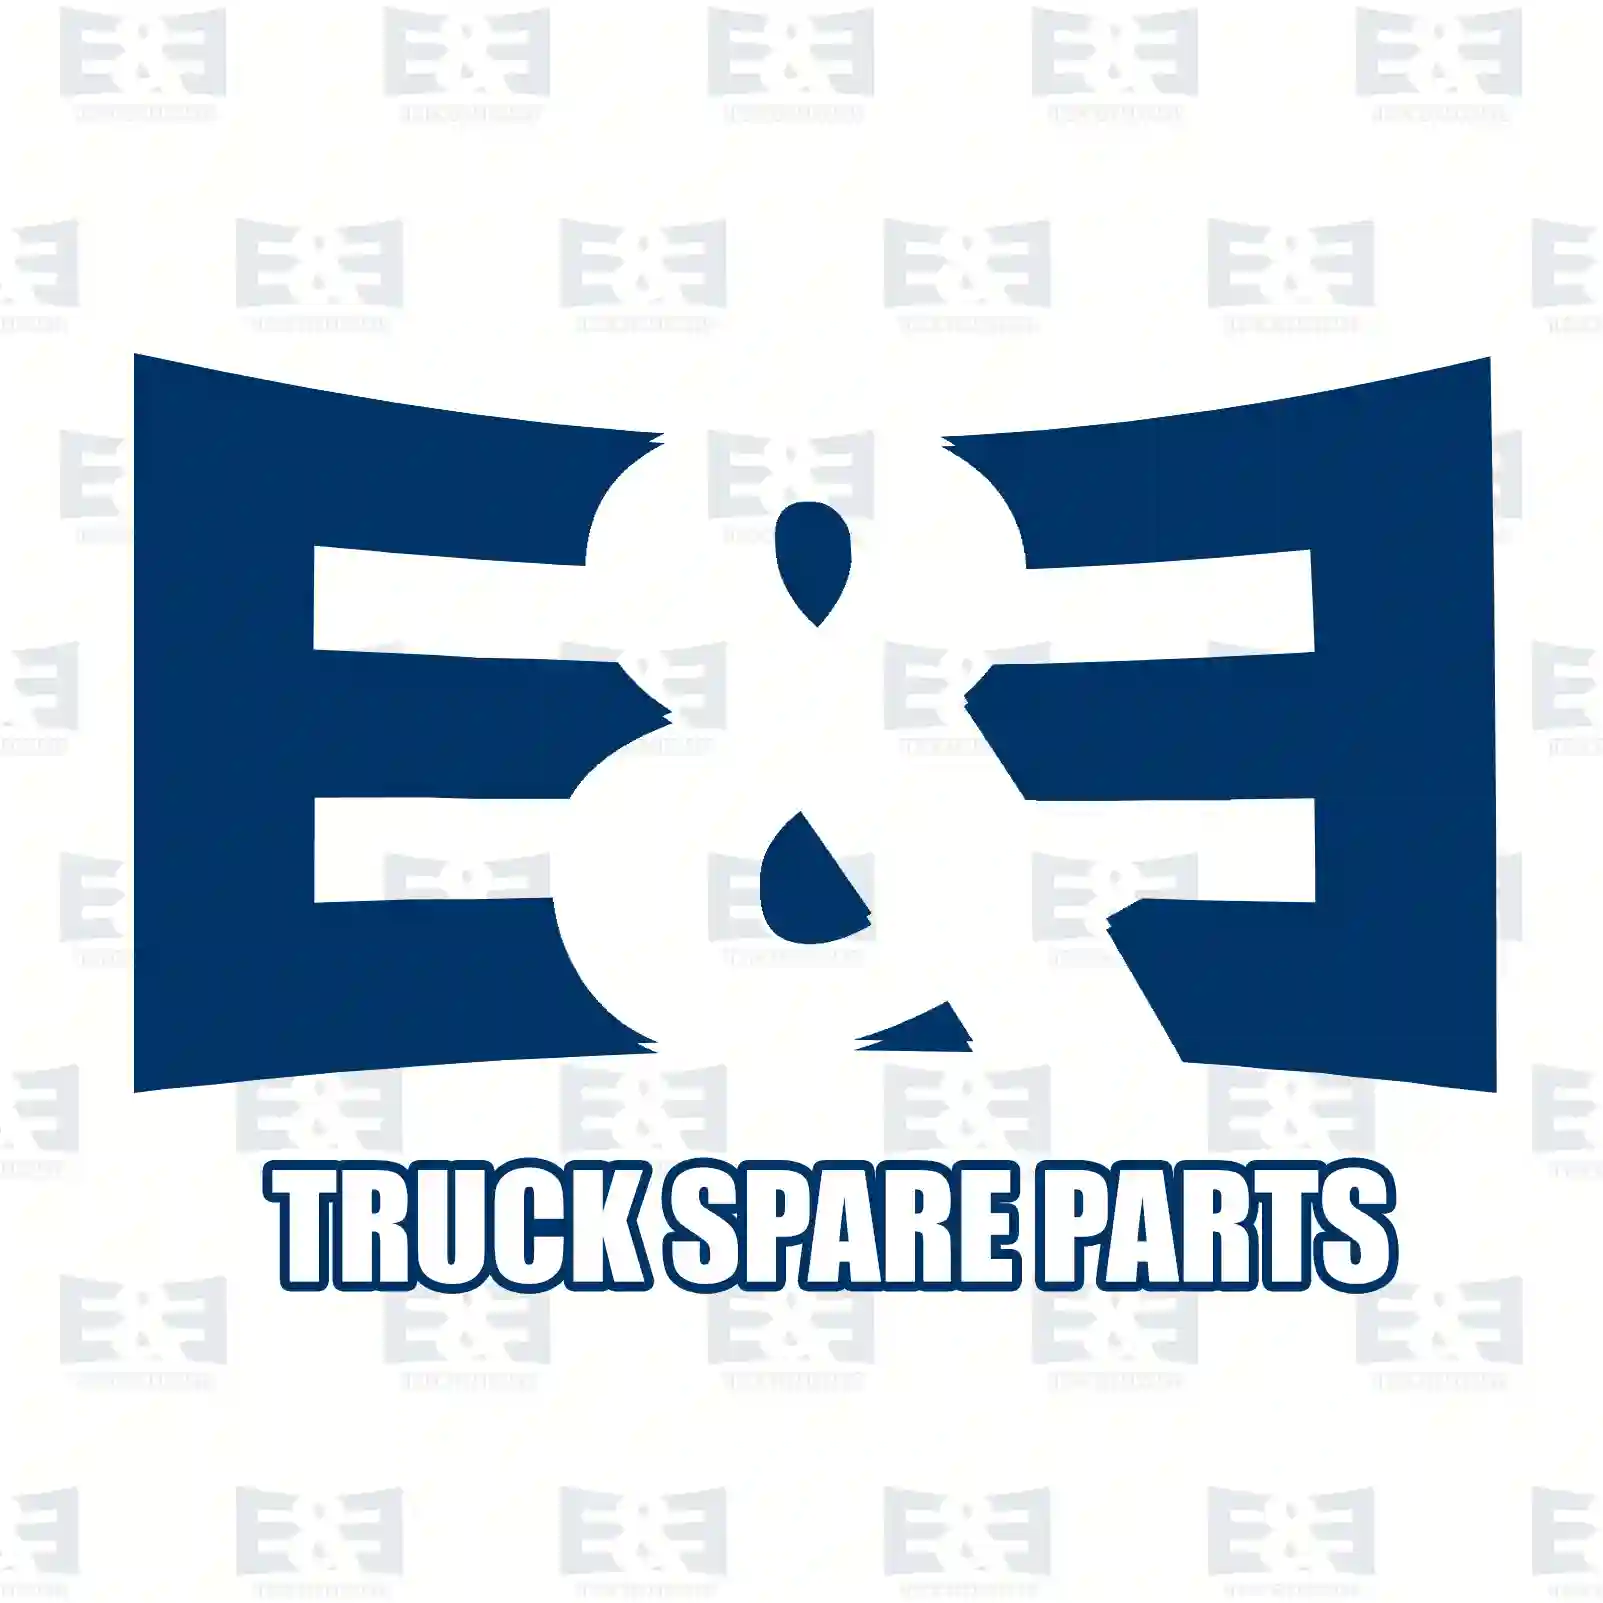 Propeller shaft, 2E2276860, 262131 ||  2E2276860 E&E Truck Spare Parts | Truck Spare Parts, Auotomotive Spare Parts Propeller shaft, 2E2276860, 262131 ||  2E2276860 E&E Truck Spare Parts | Truck Spare Parts, Auotomotive Spare Parts